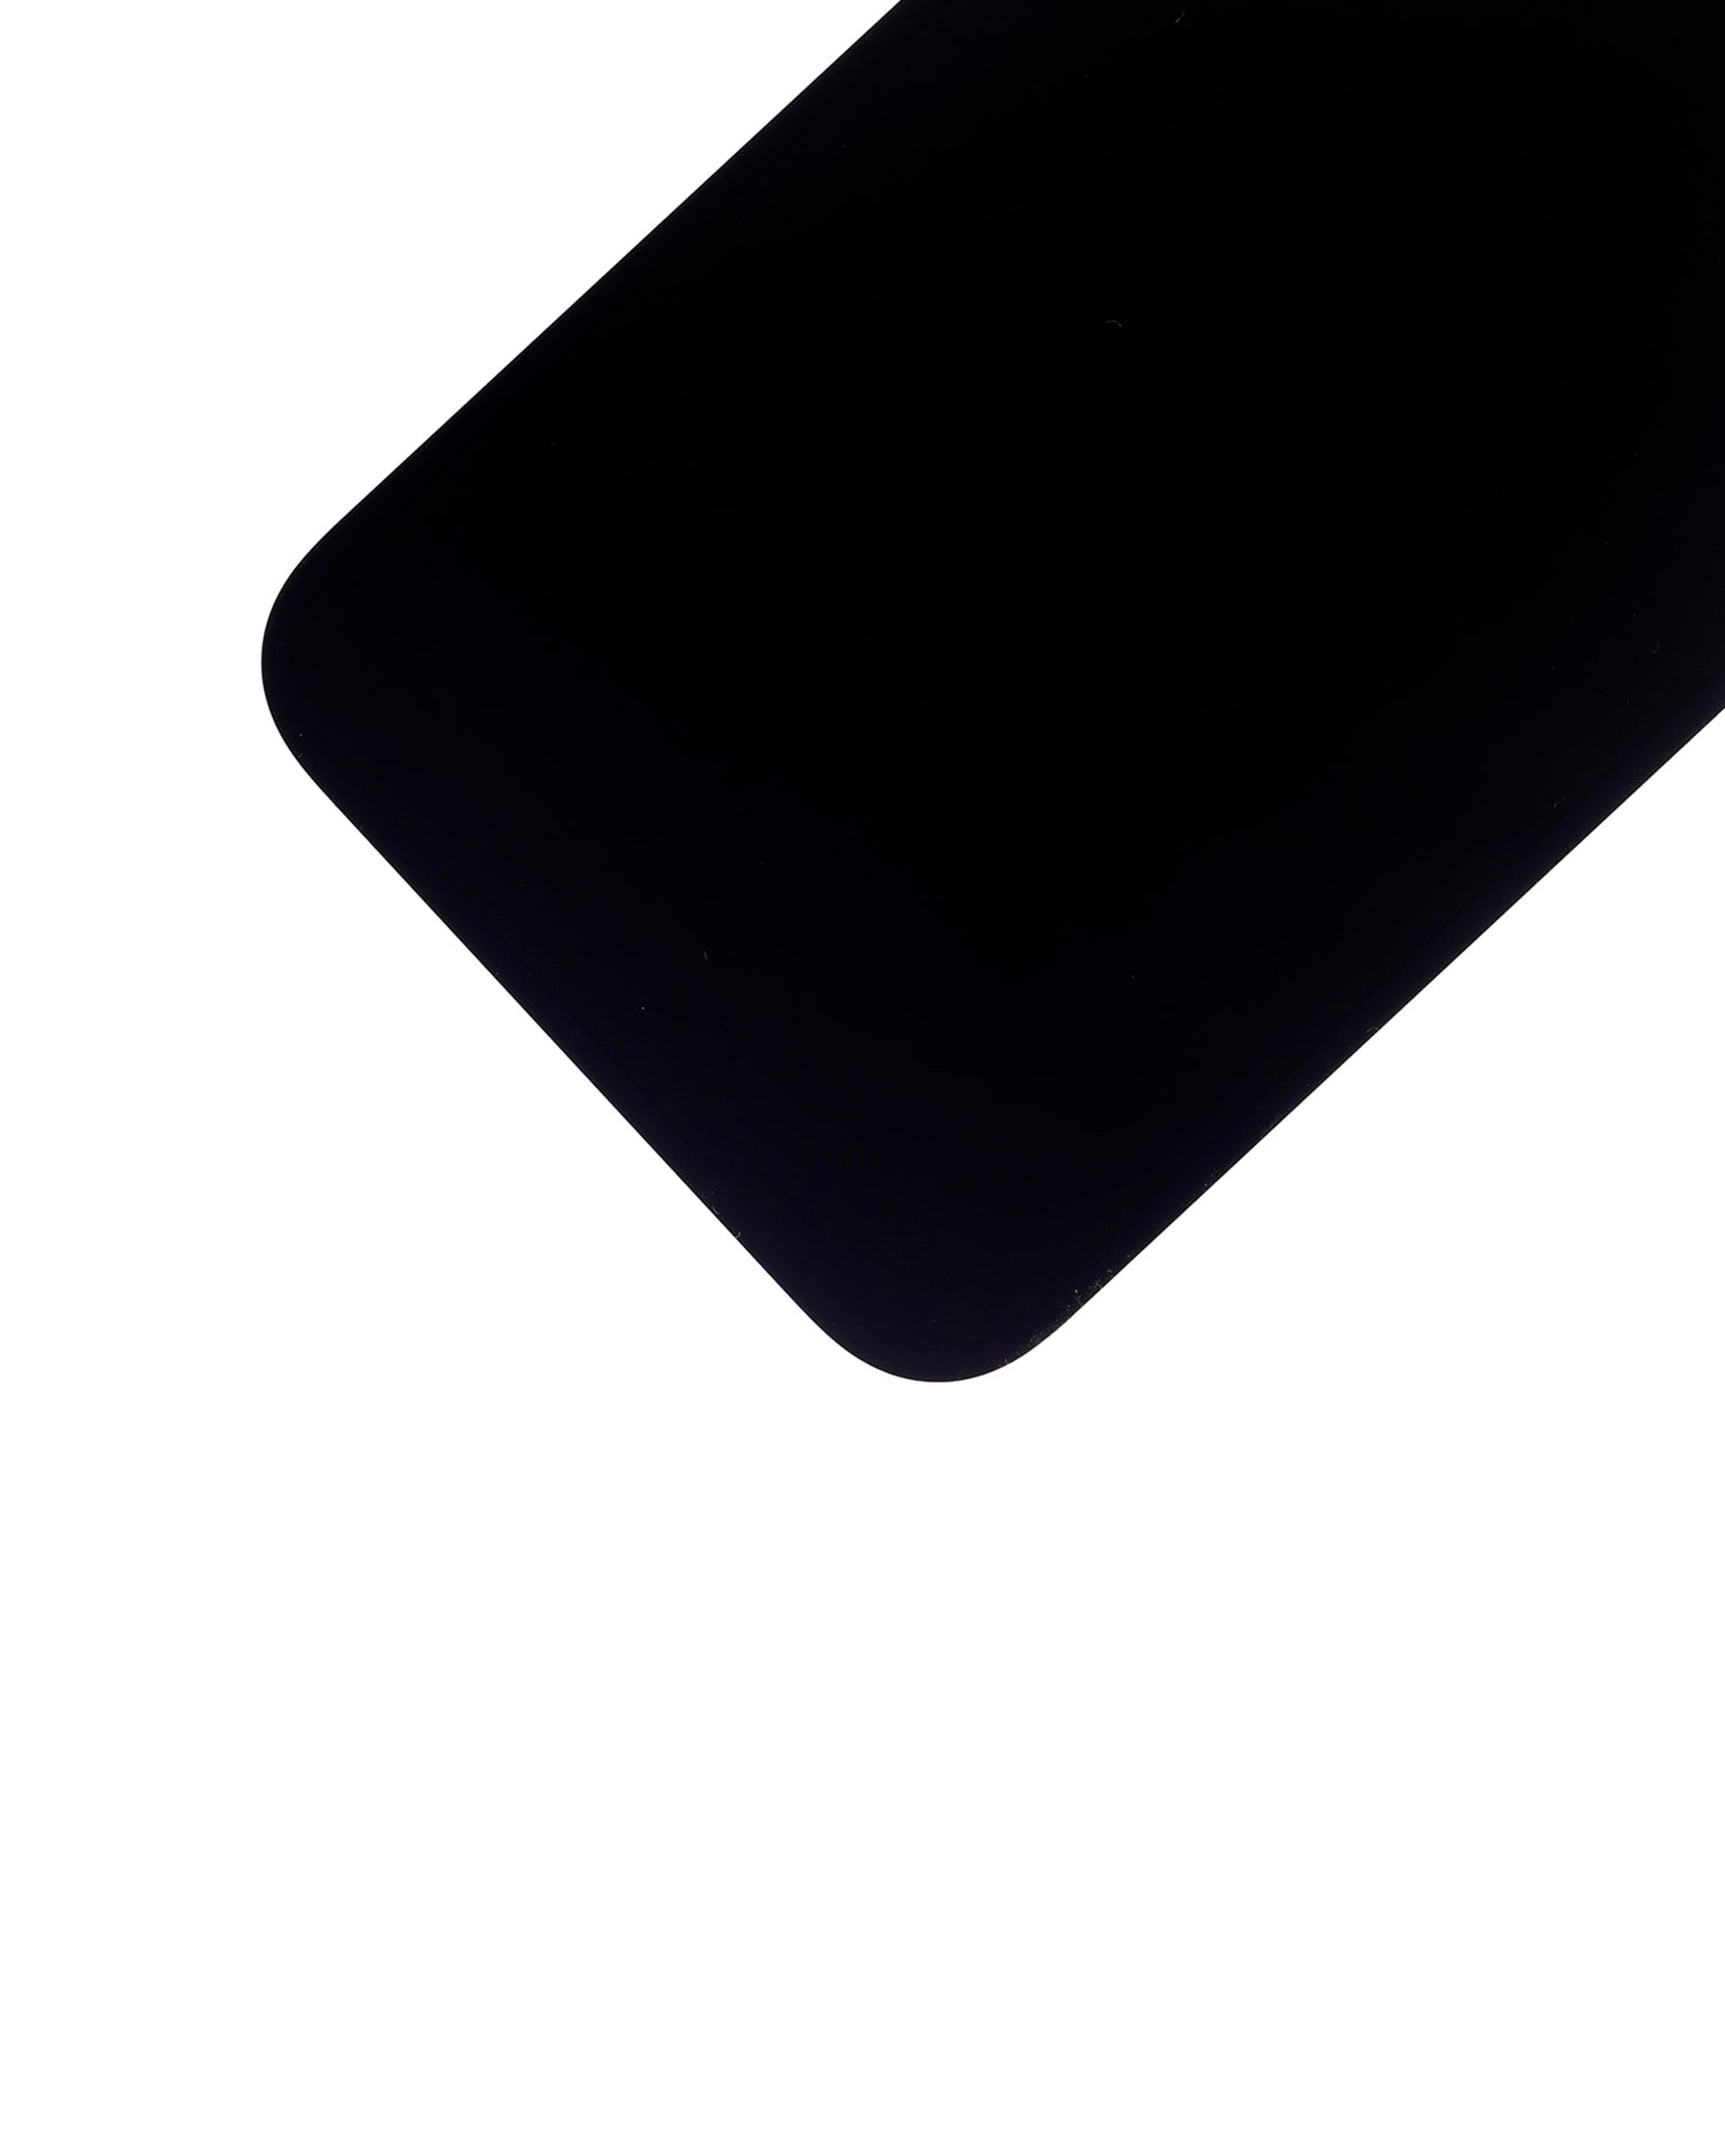 আইফোন 13 প্রো ম্যাক্সের জন্য OLED অ্যাসেম্বলি স্ক্রিন প্রতিস্থাপন - 1